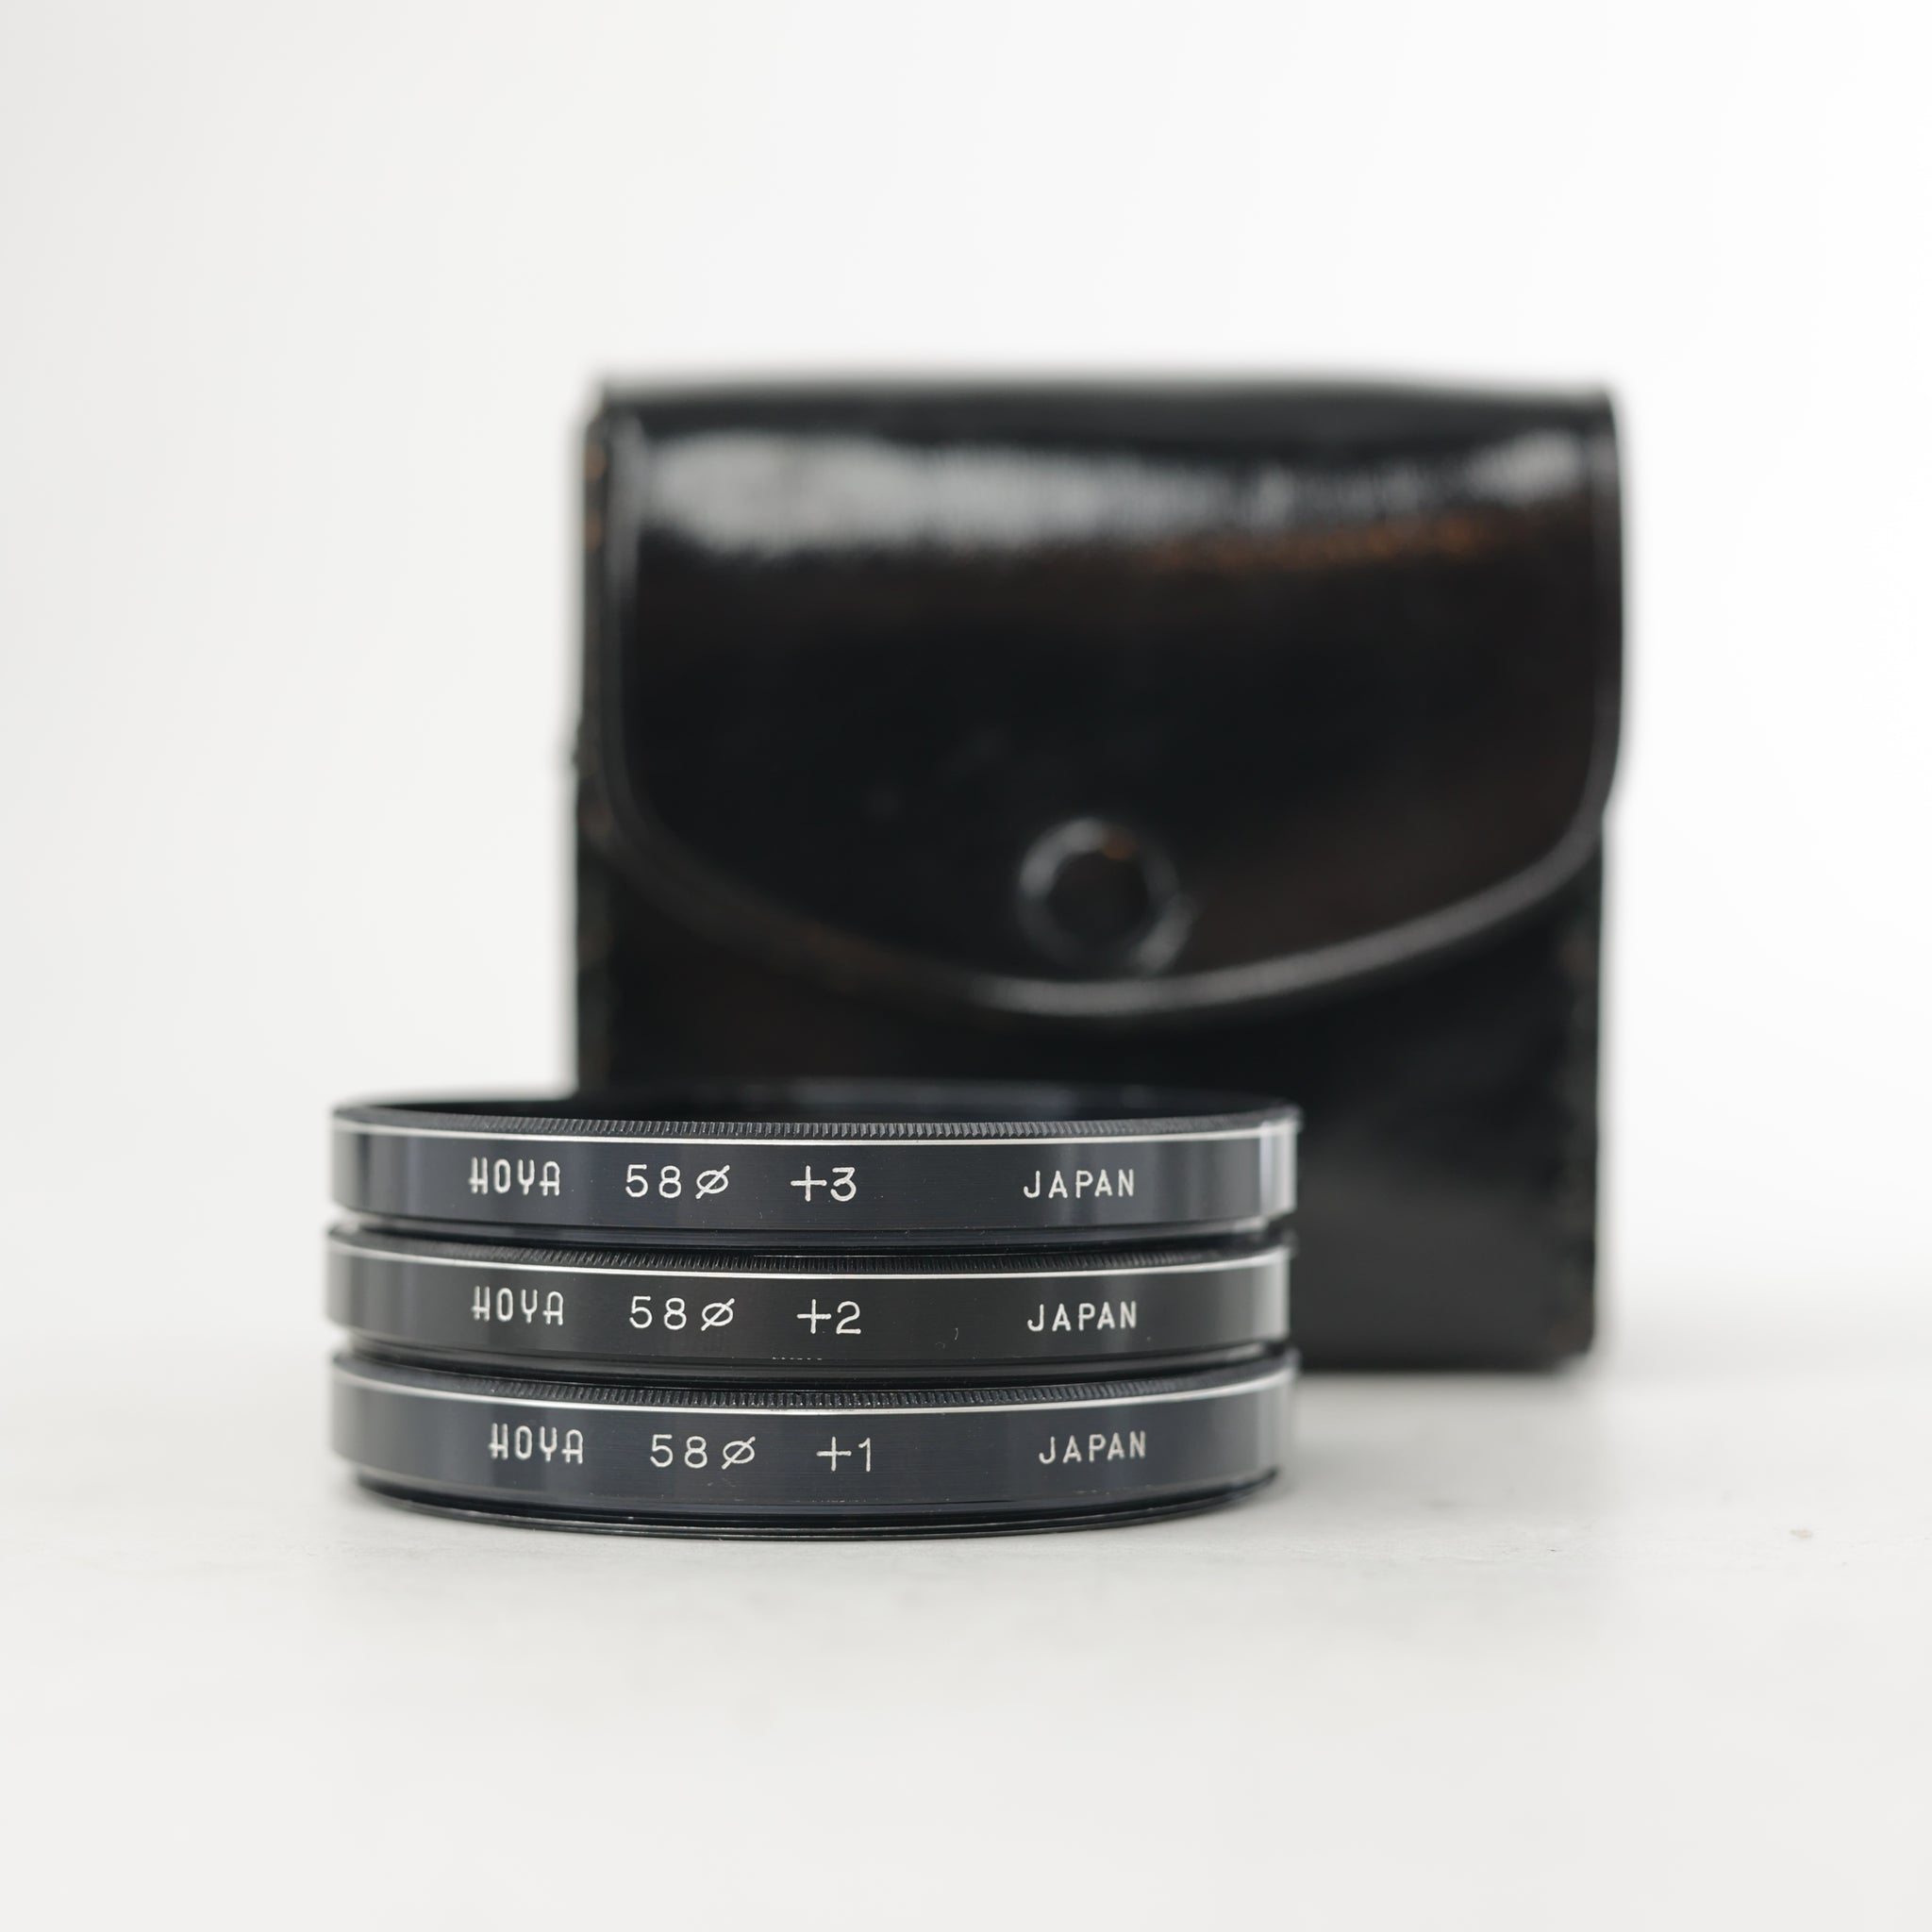 Hoya Close-Up Lens Kit + Case, Used